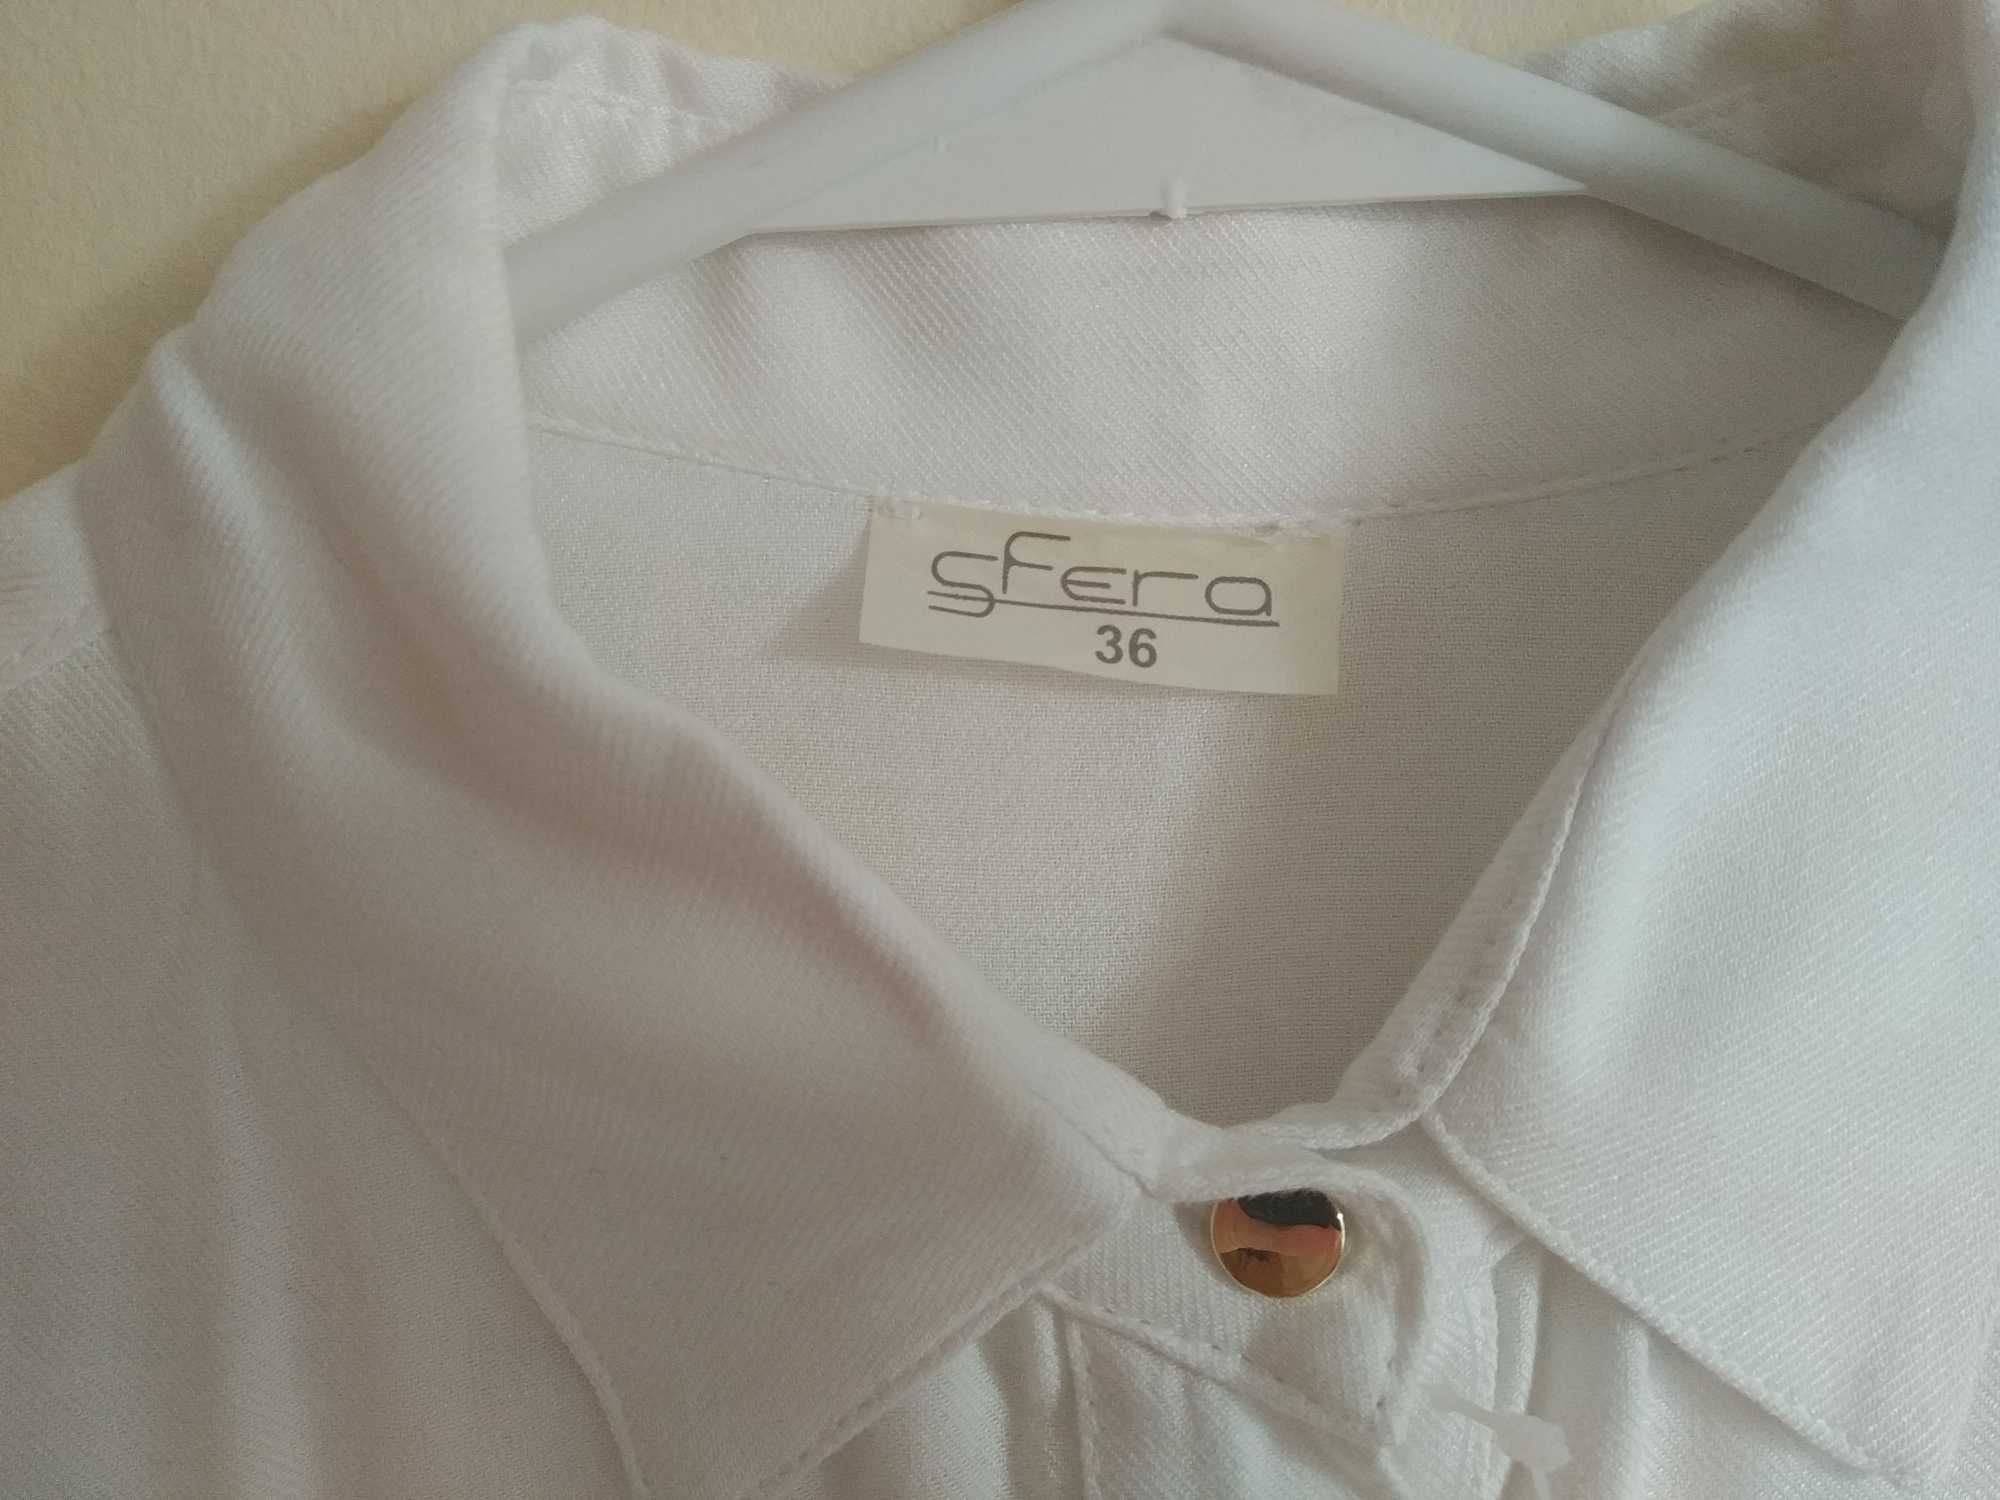 Biała koszula marki Sfera 36 [S]